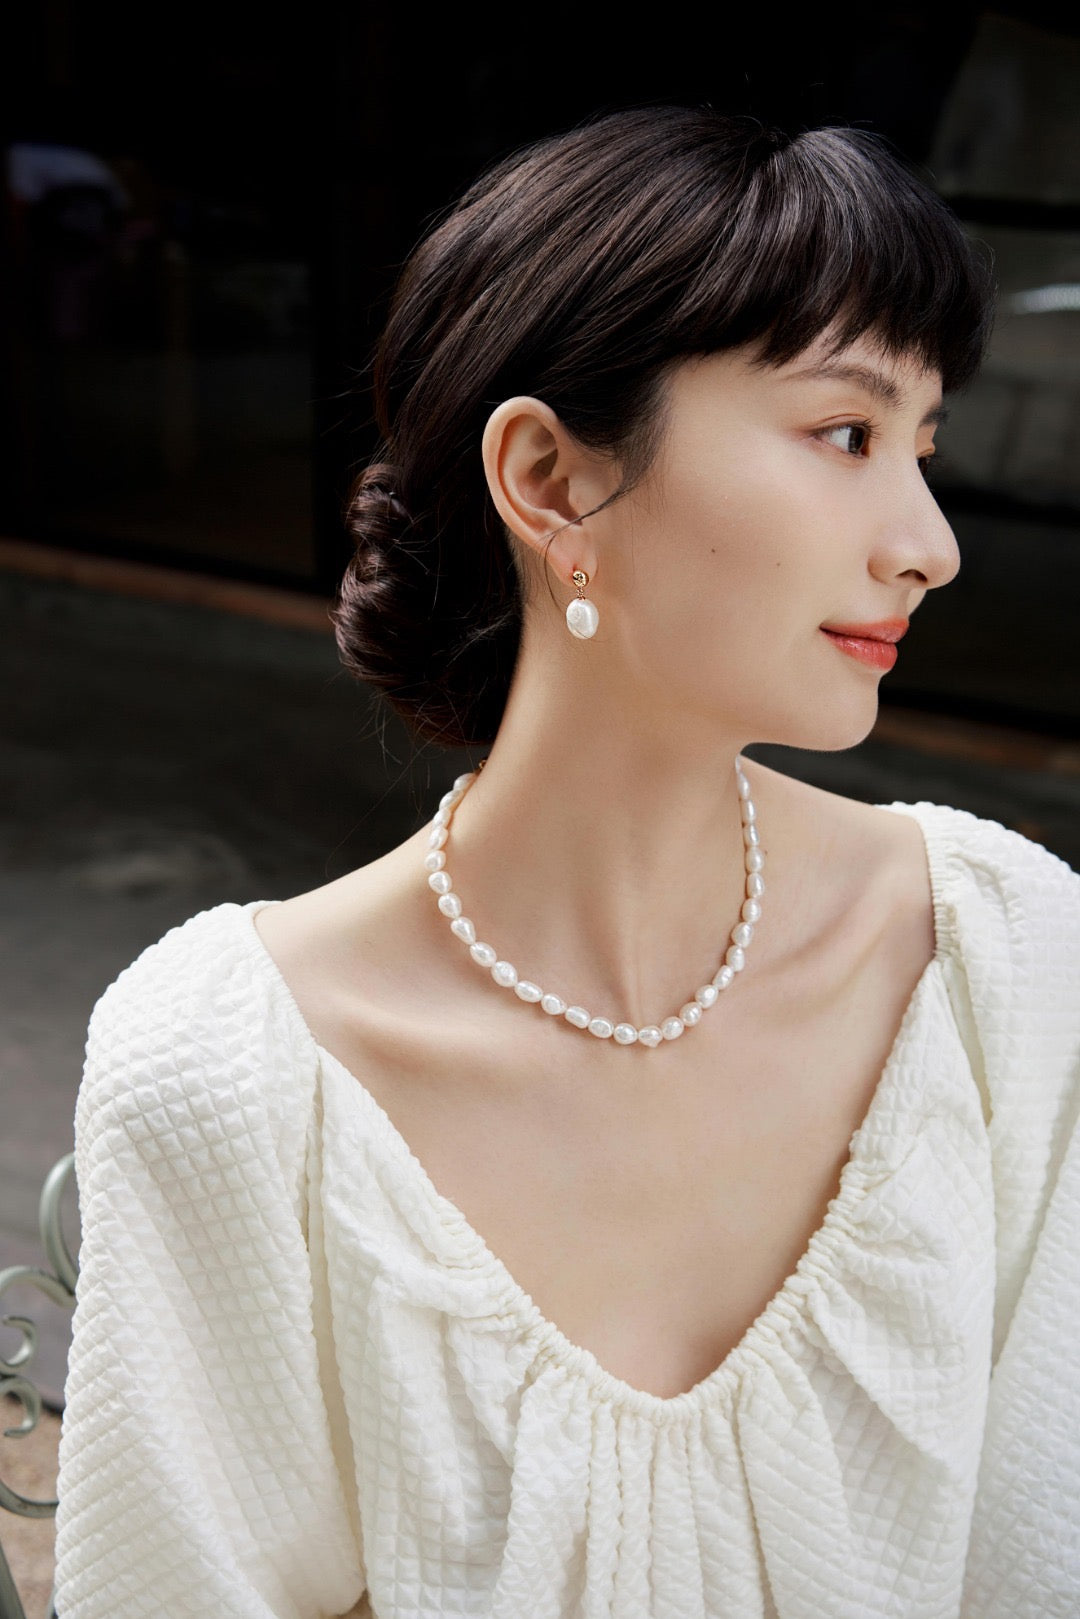 Large Irregular Baroque Pearl Earrings | Estincele Jewellery | Women's earrings | Pearl earrings